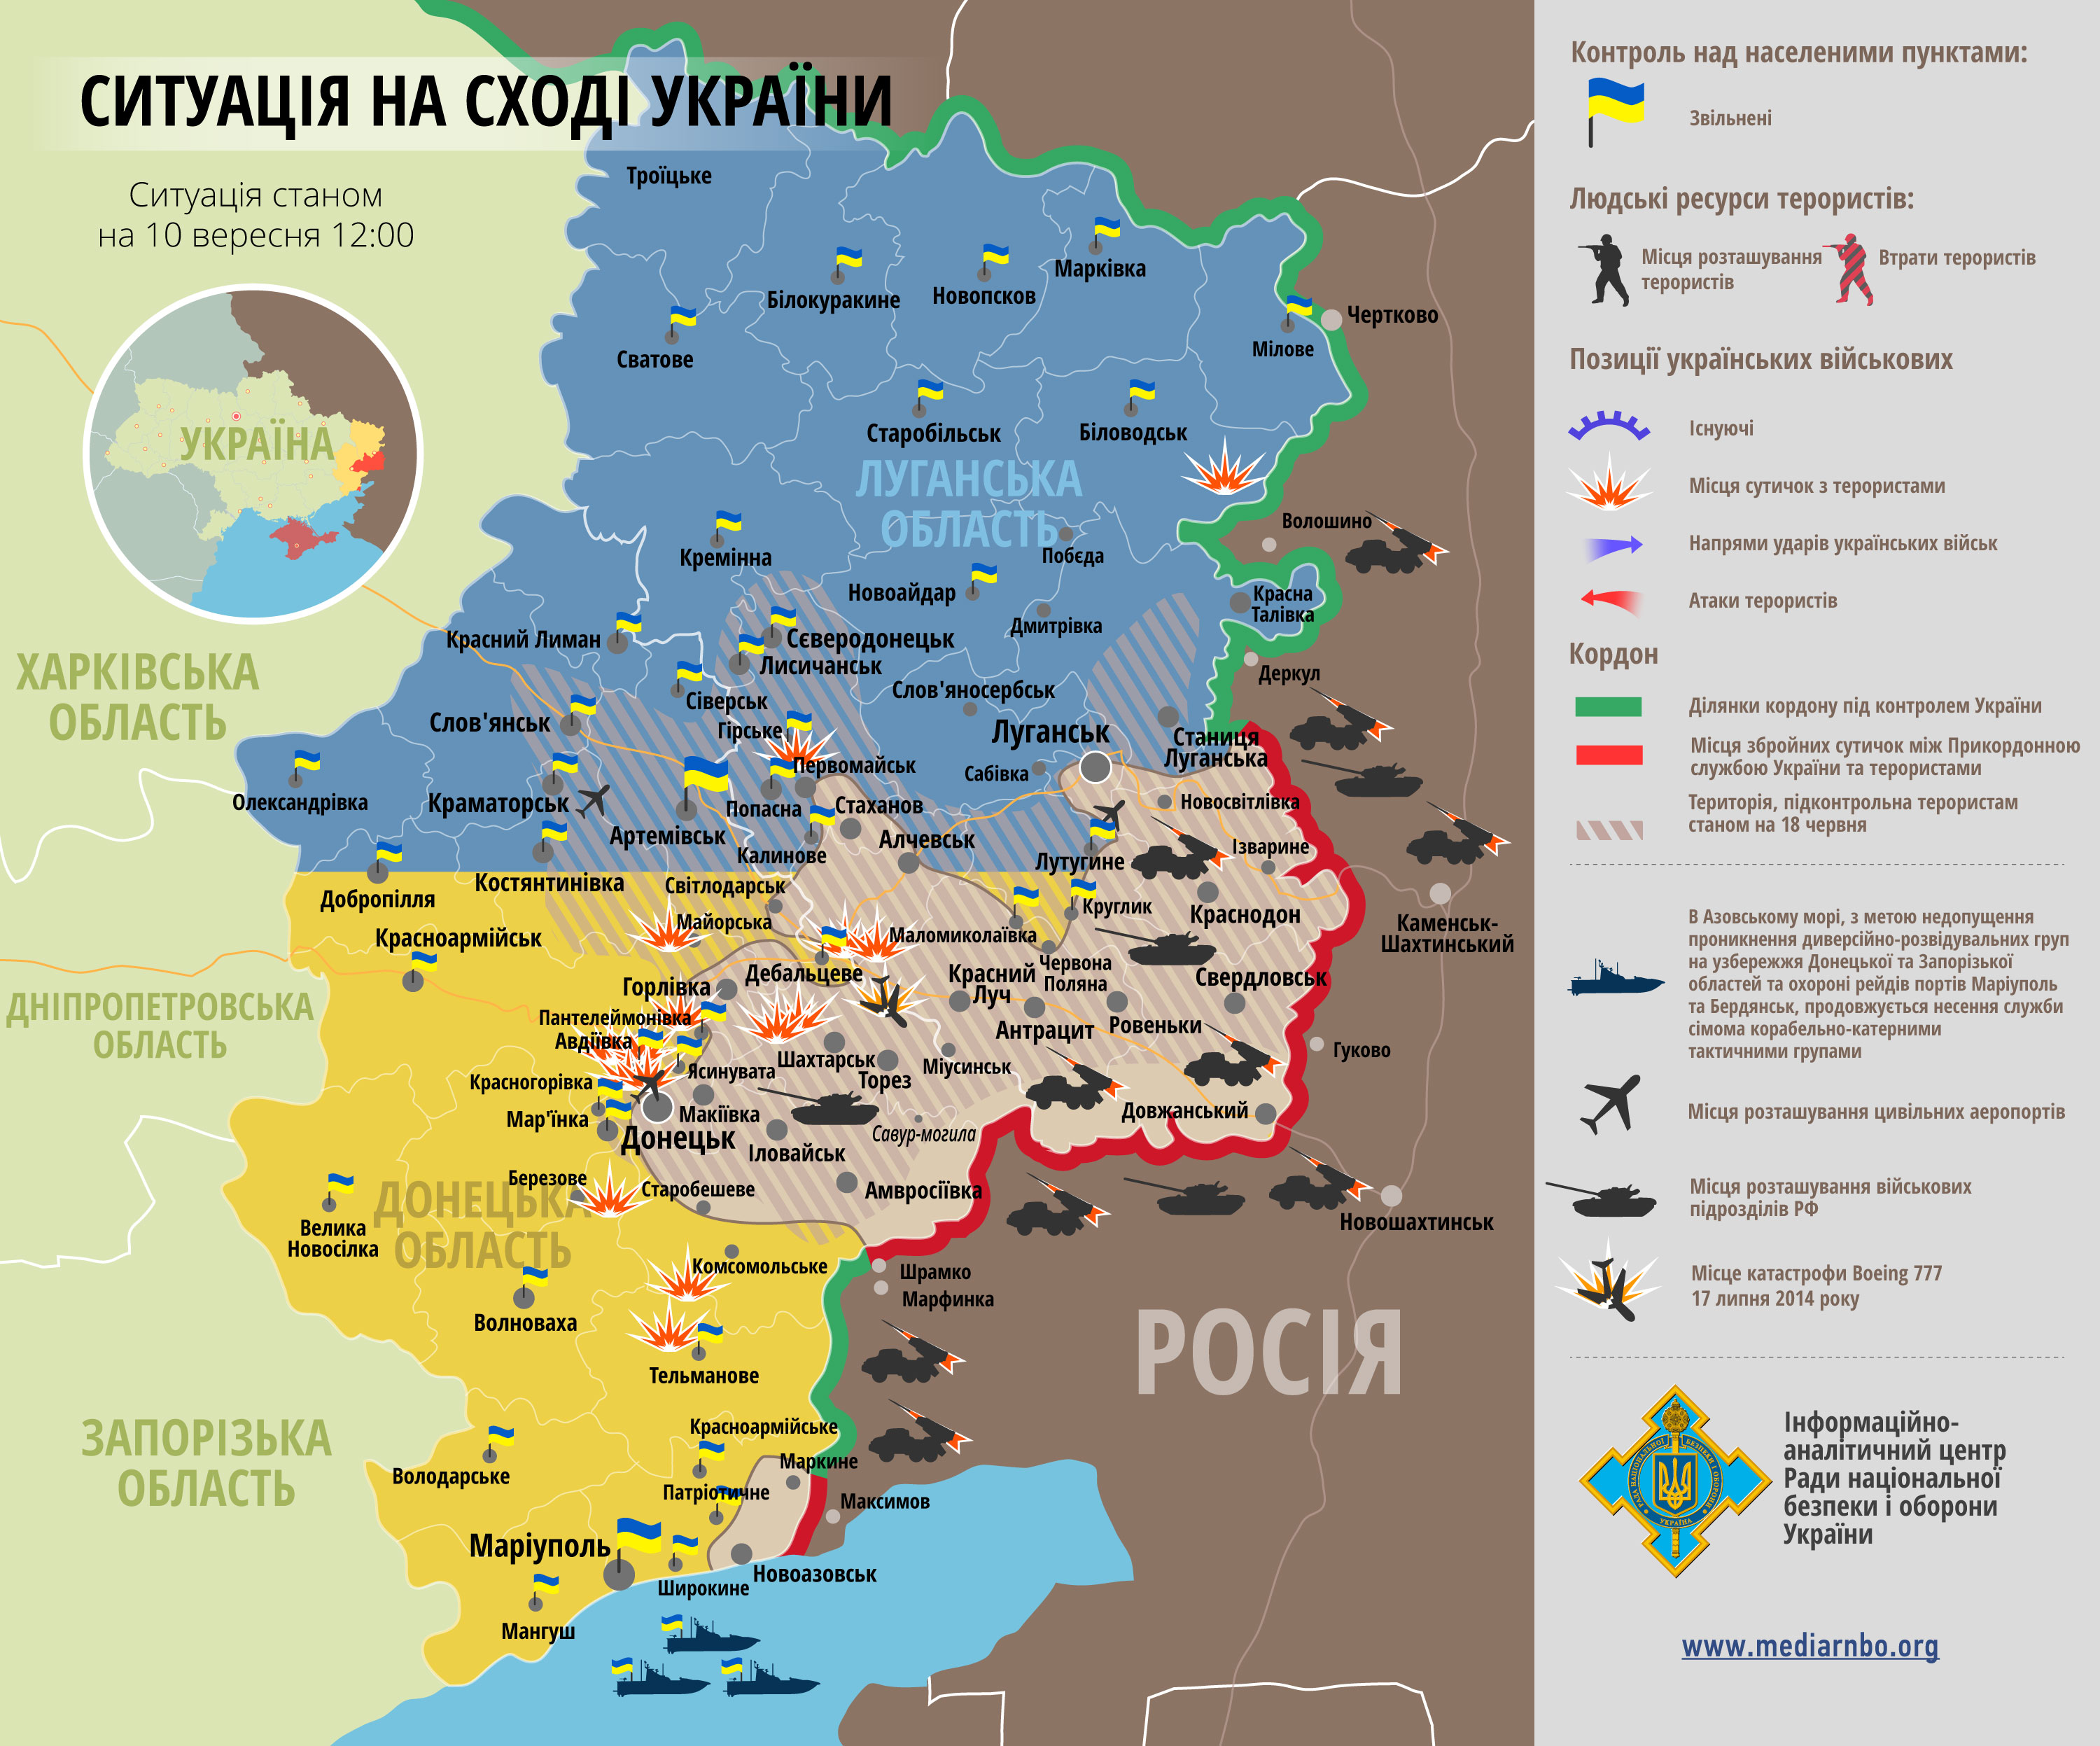 Часть территории Донбасса перешла под контроль противника: карта